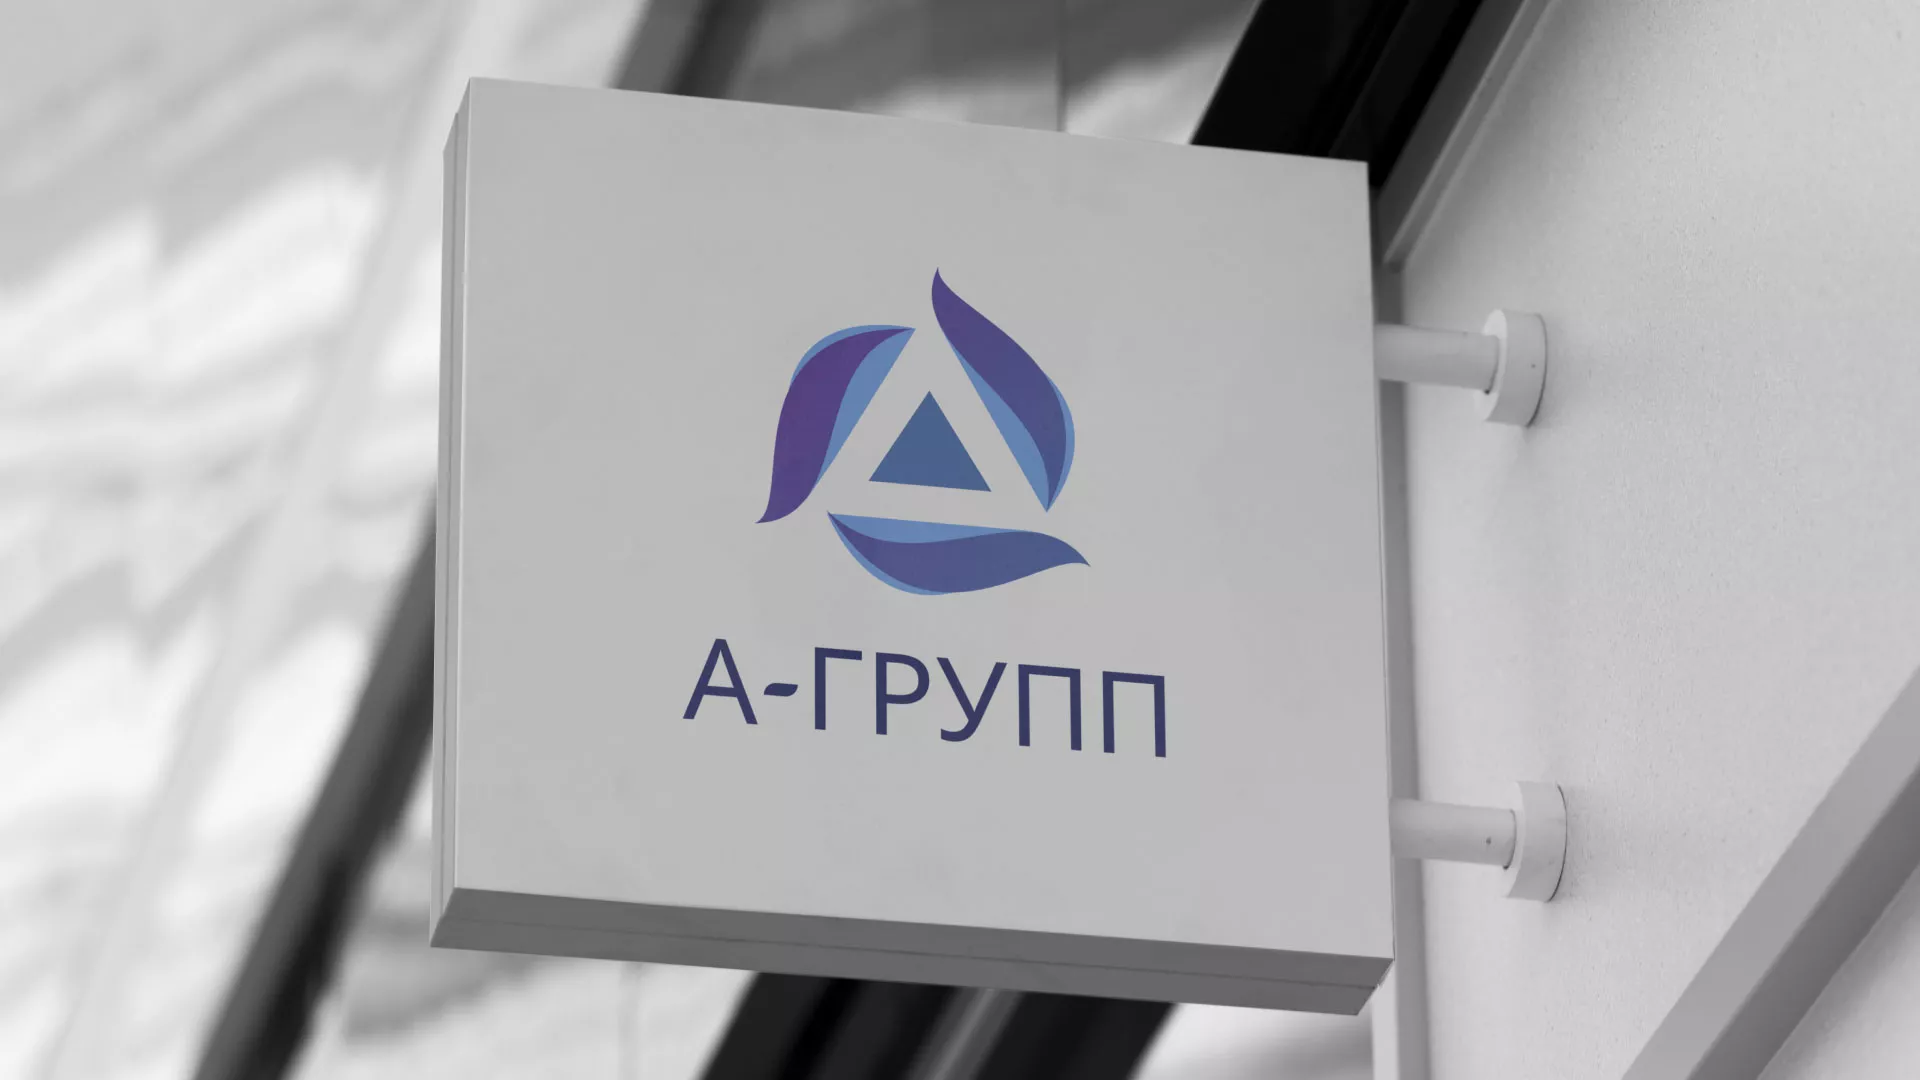 Создание логотипа компании «А-ГРУПП» в Шилке